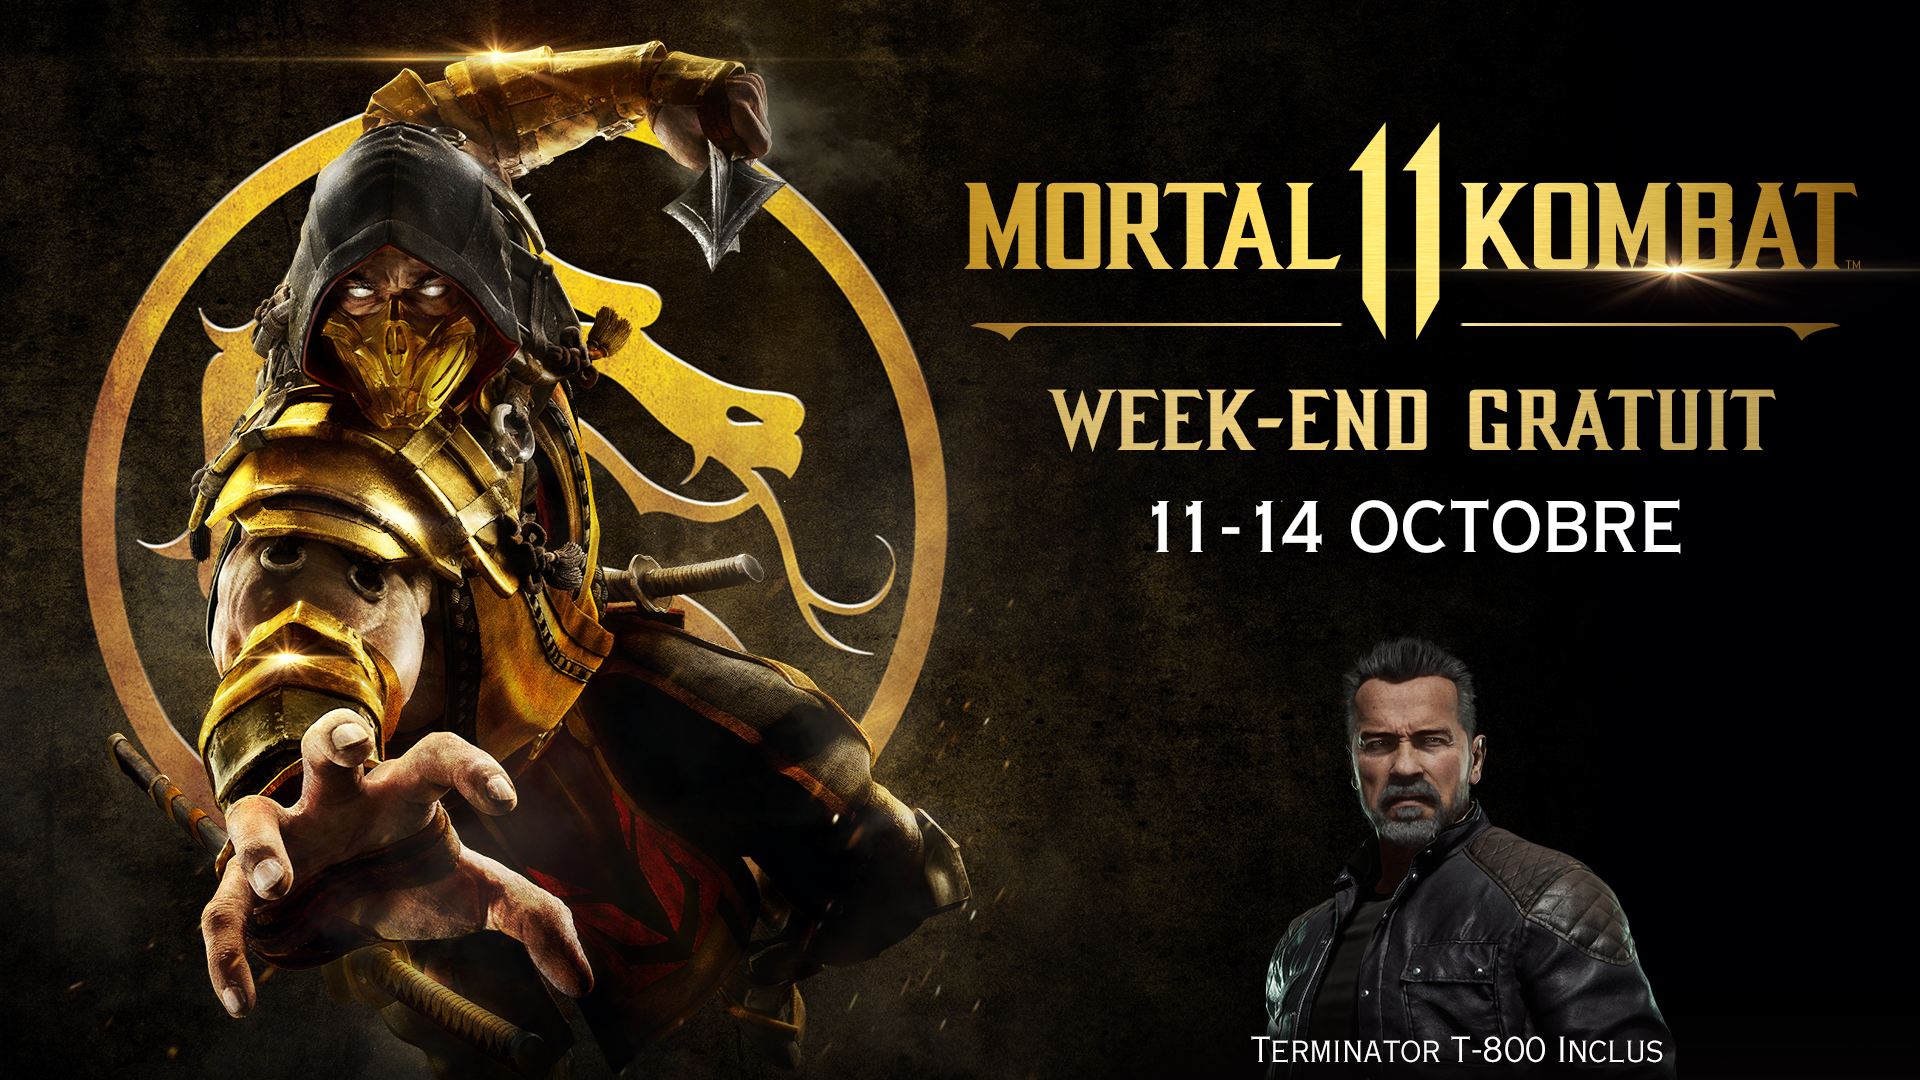 Jouez gratuitement à Mortal Kombat 11 du 11 au 14 octobre sur PlayStation 4 et Xbox One